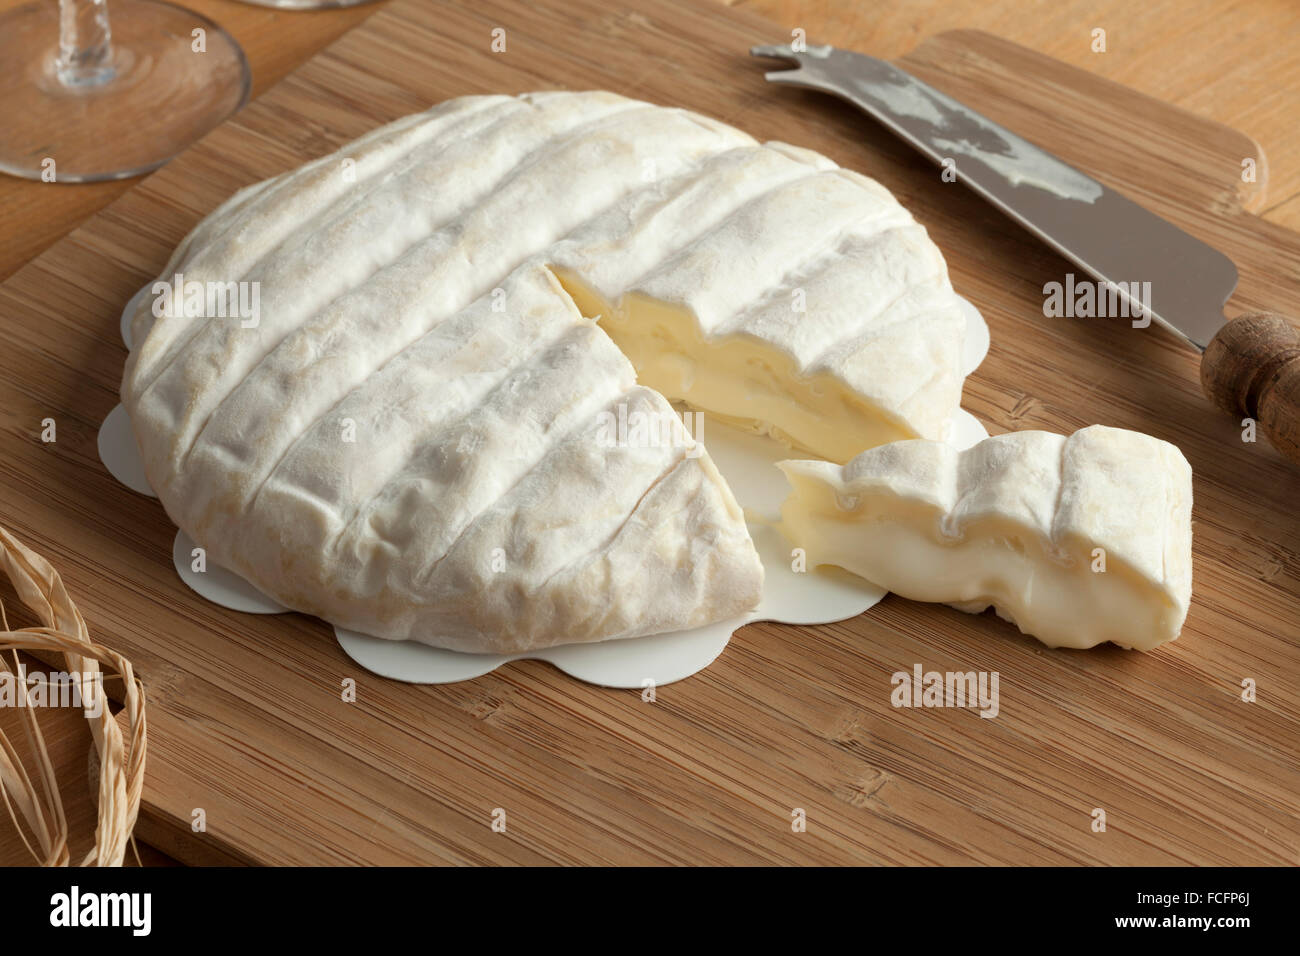 Trozo de suave queso italiano Tuma dla paja Foto de stock